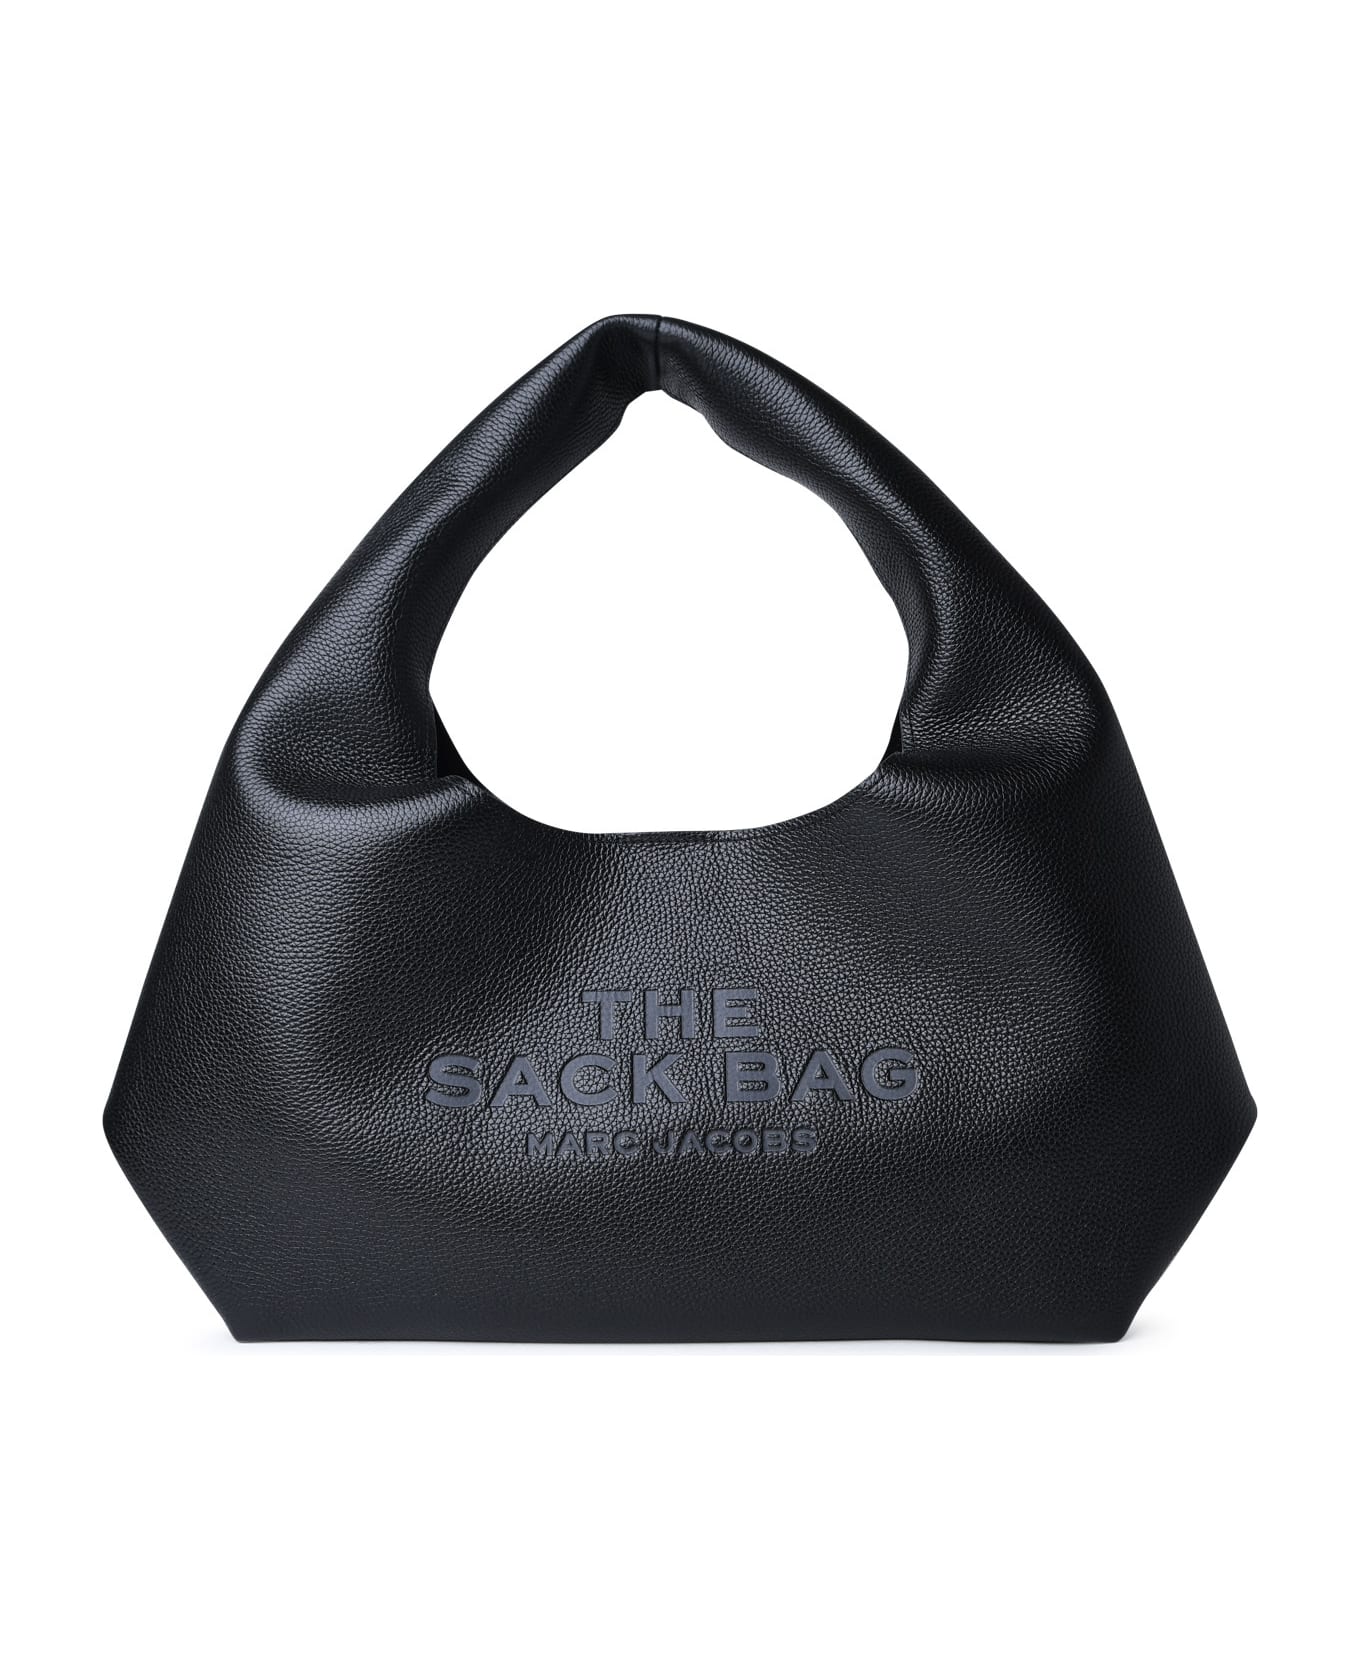 Marc Jacobs 'sack' Black Leather Bag - BLACK